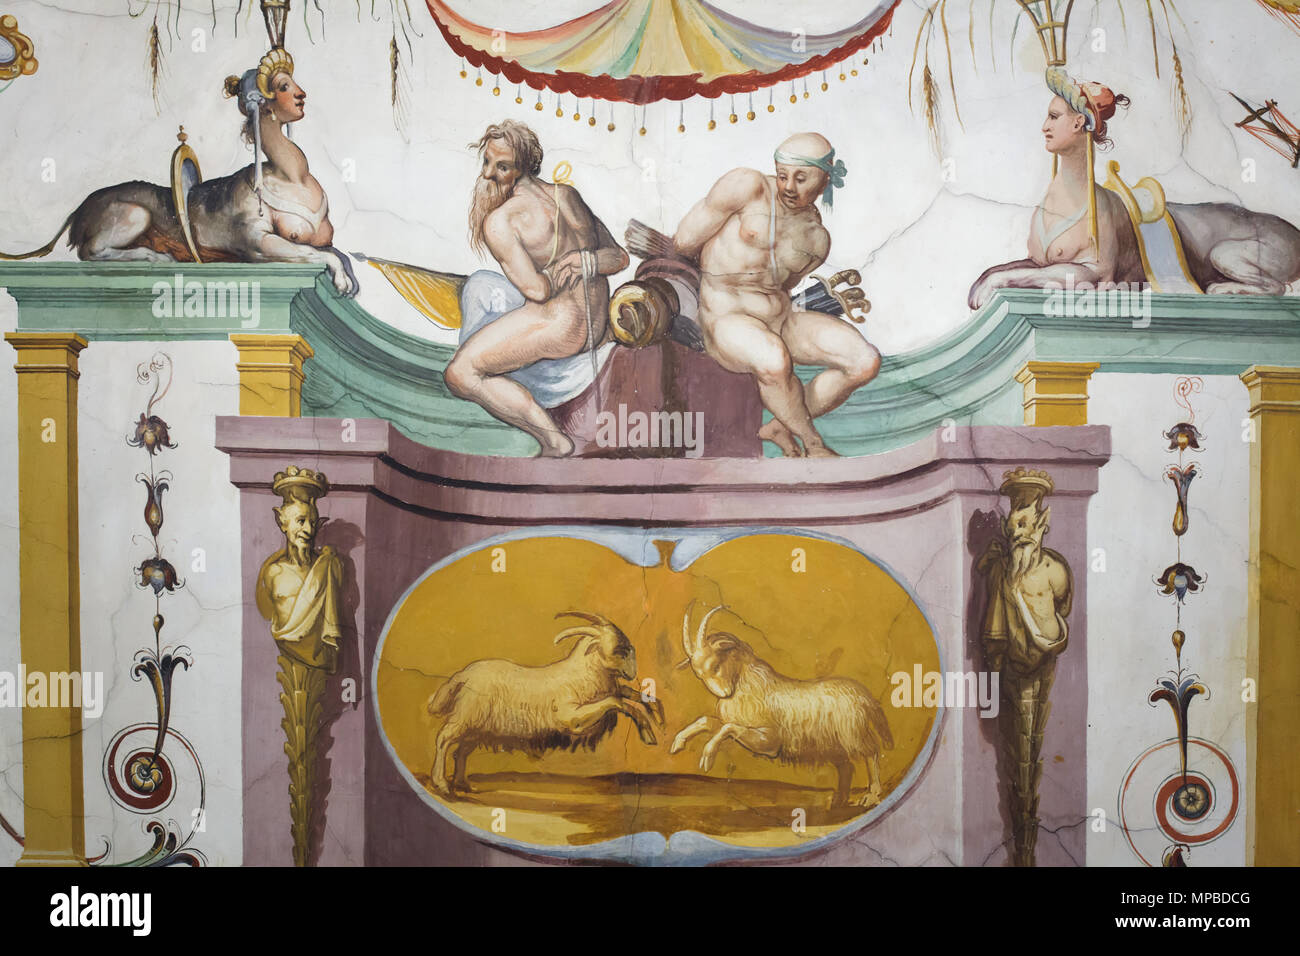 Zwei Böcke kämpfen und zwei Sklaven und Sphingen in das Deckenfresko im Vasari Korridor in den Uffizien (Galleria degli Uffizi) in Florenz, Toskana, Italien dargestellt. Stockfoto